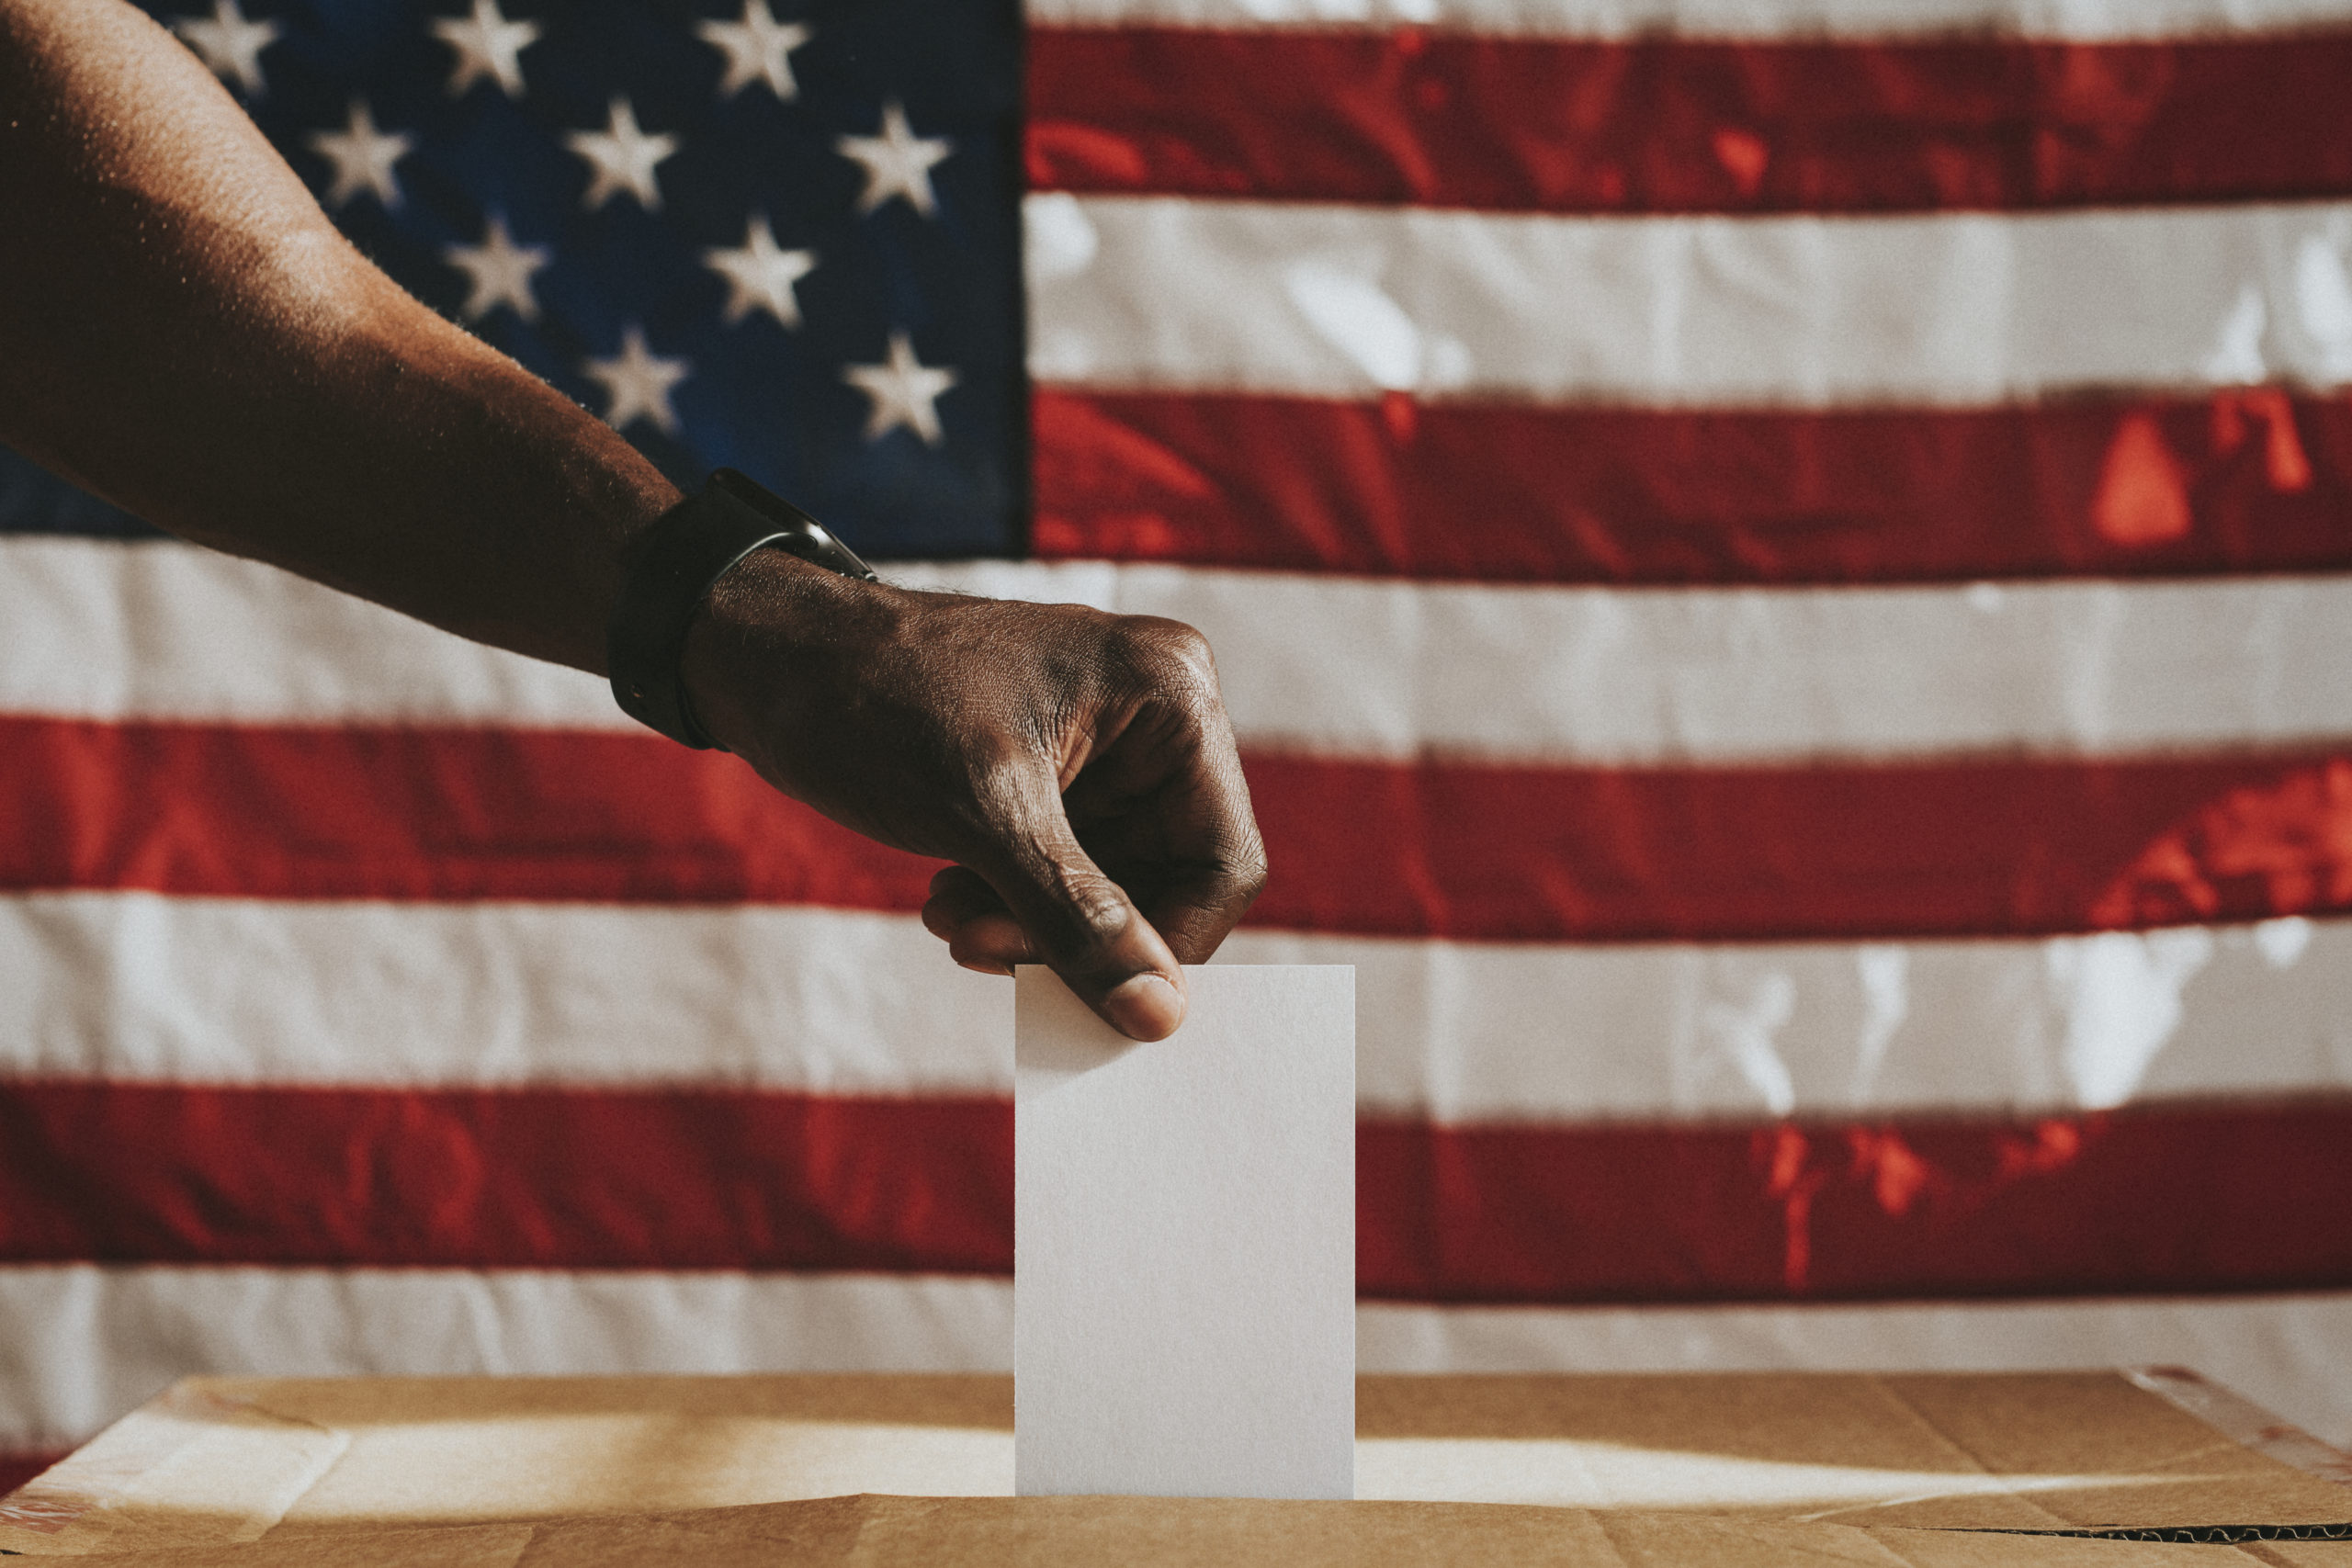 American casting his vote to a ballot box